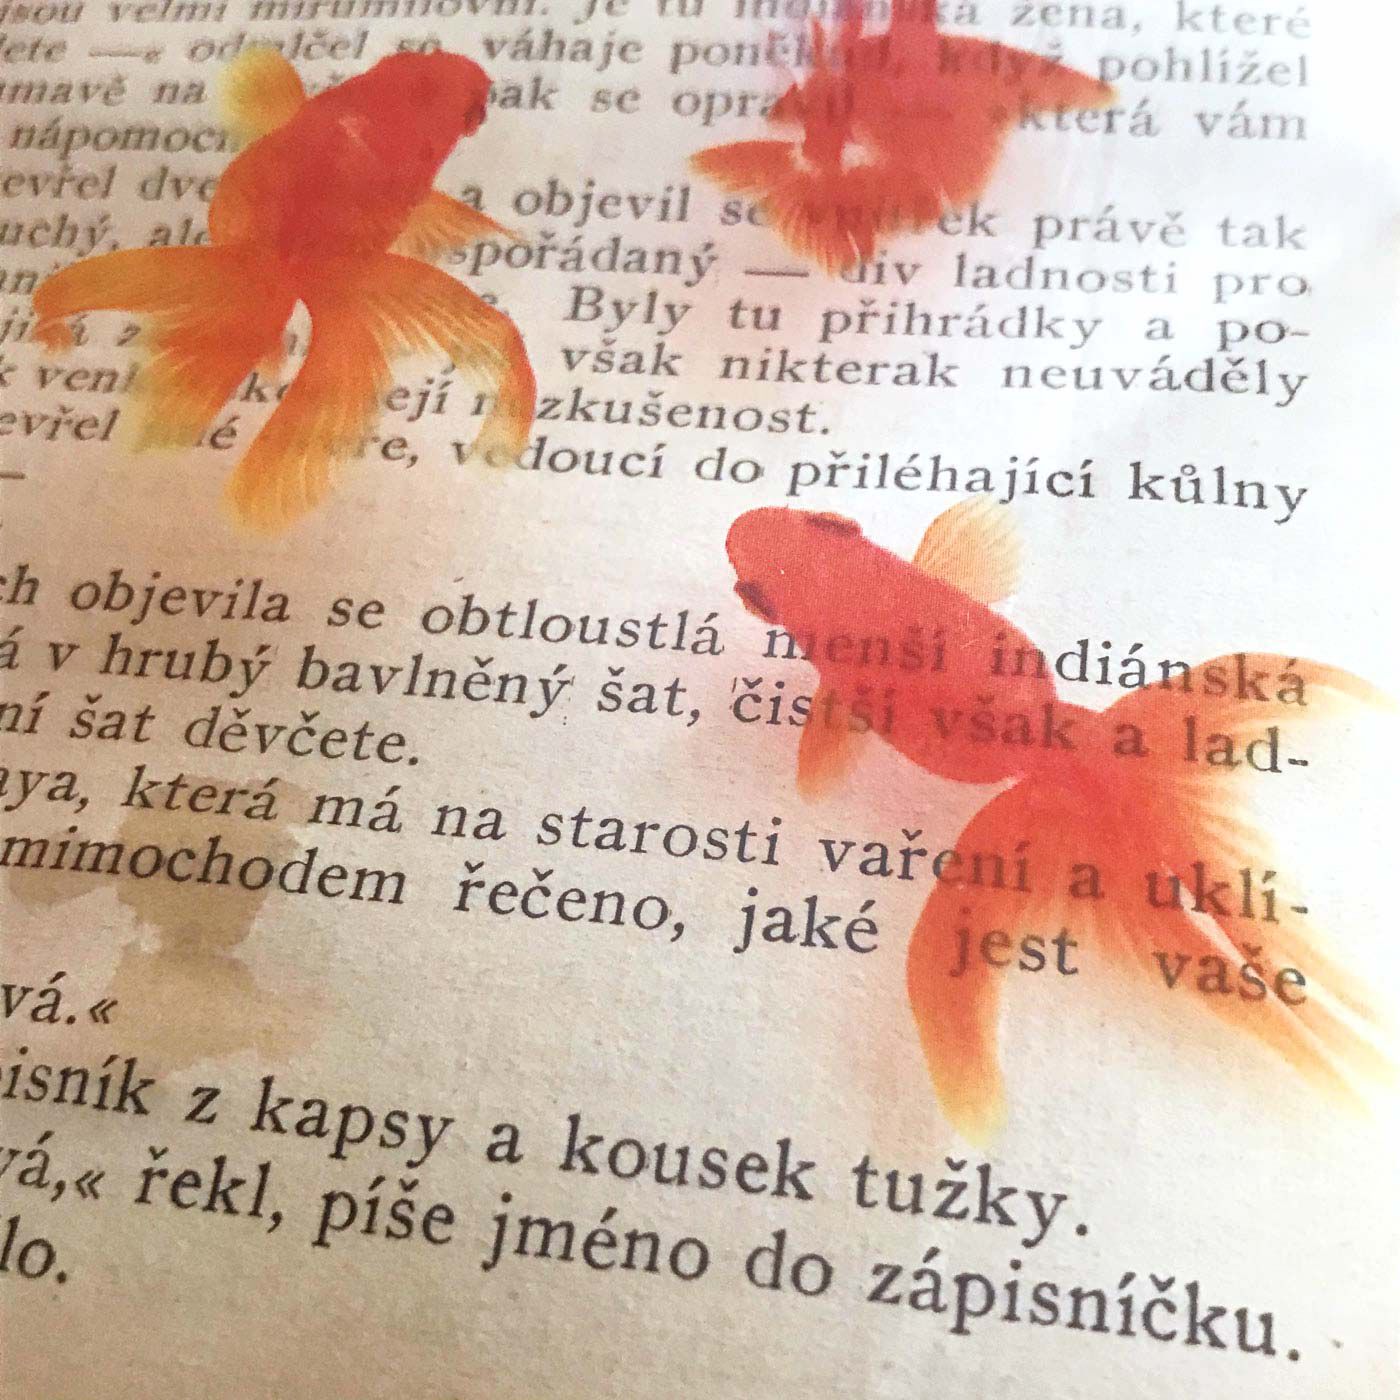 フェリシモの雑貨 Kraso|本の中を金魚が泳ぐ!?　金魚の透明しおりセット〈三尾和金・琉金＆小赤〉|今では、金魚は私の「知的好奇心を満たしてくれる存在」になりました。金魚の形、動き、たまに見せる感情的な表情を写真に収めるのが好きです。そして、金魚を撮影する仕事をしたり、金魚の写真をモチーフに作品をつくったり、「金魚作家」として活動していくうちに、急速にいろいろな縁が広がって……。なので、私にとって金魚は”縁起がいい”イメージでもあります。金魚は、私と人をつないでくれるものかも知れません。